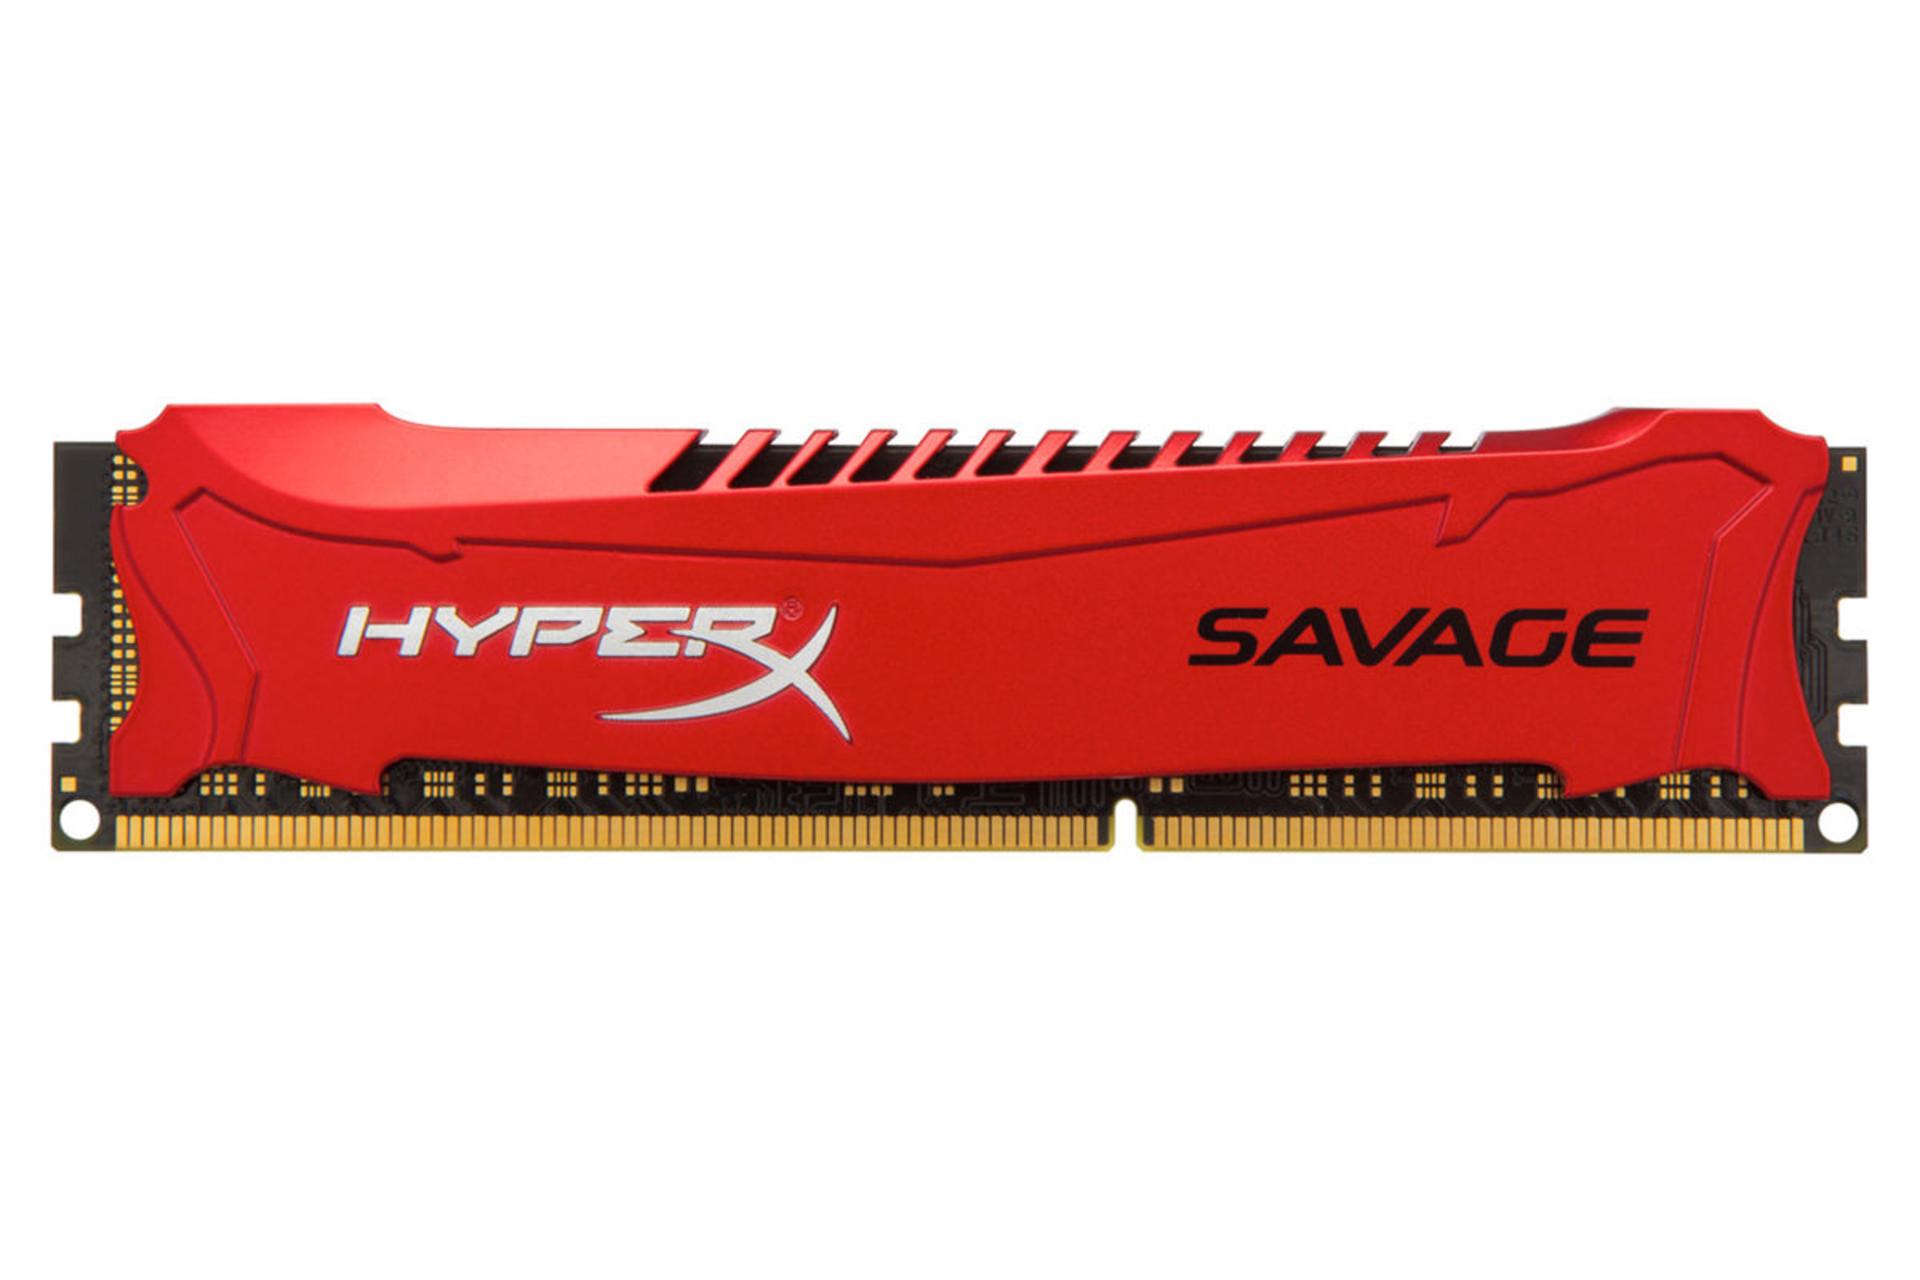 حافظه رم هایپر ایکس Savage ظرفیت 4 گیگابایت از نوع DDR3-1600